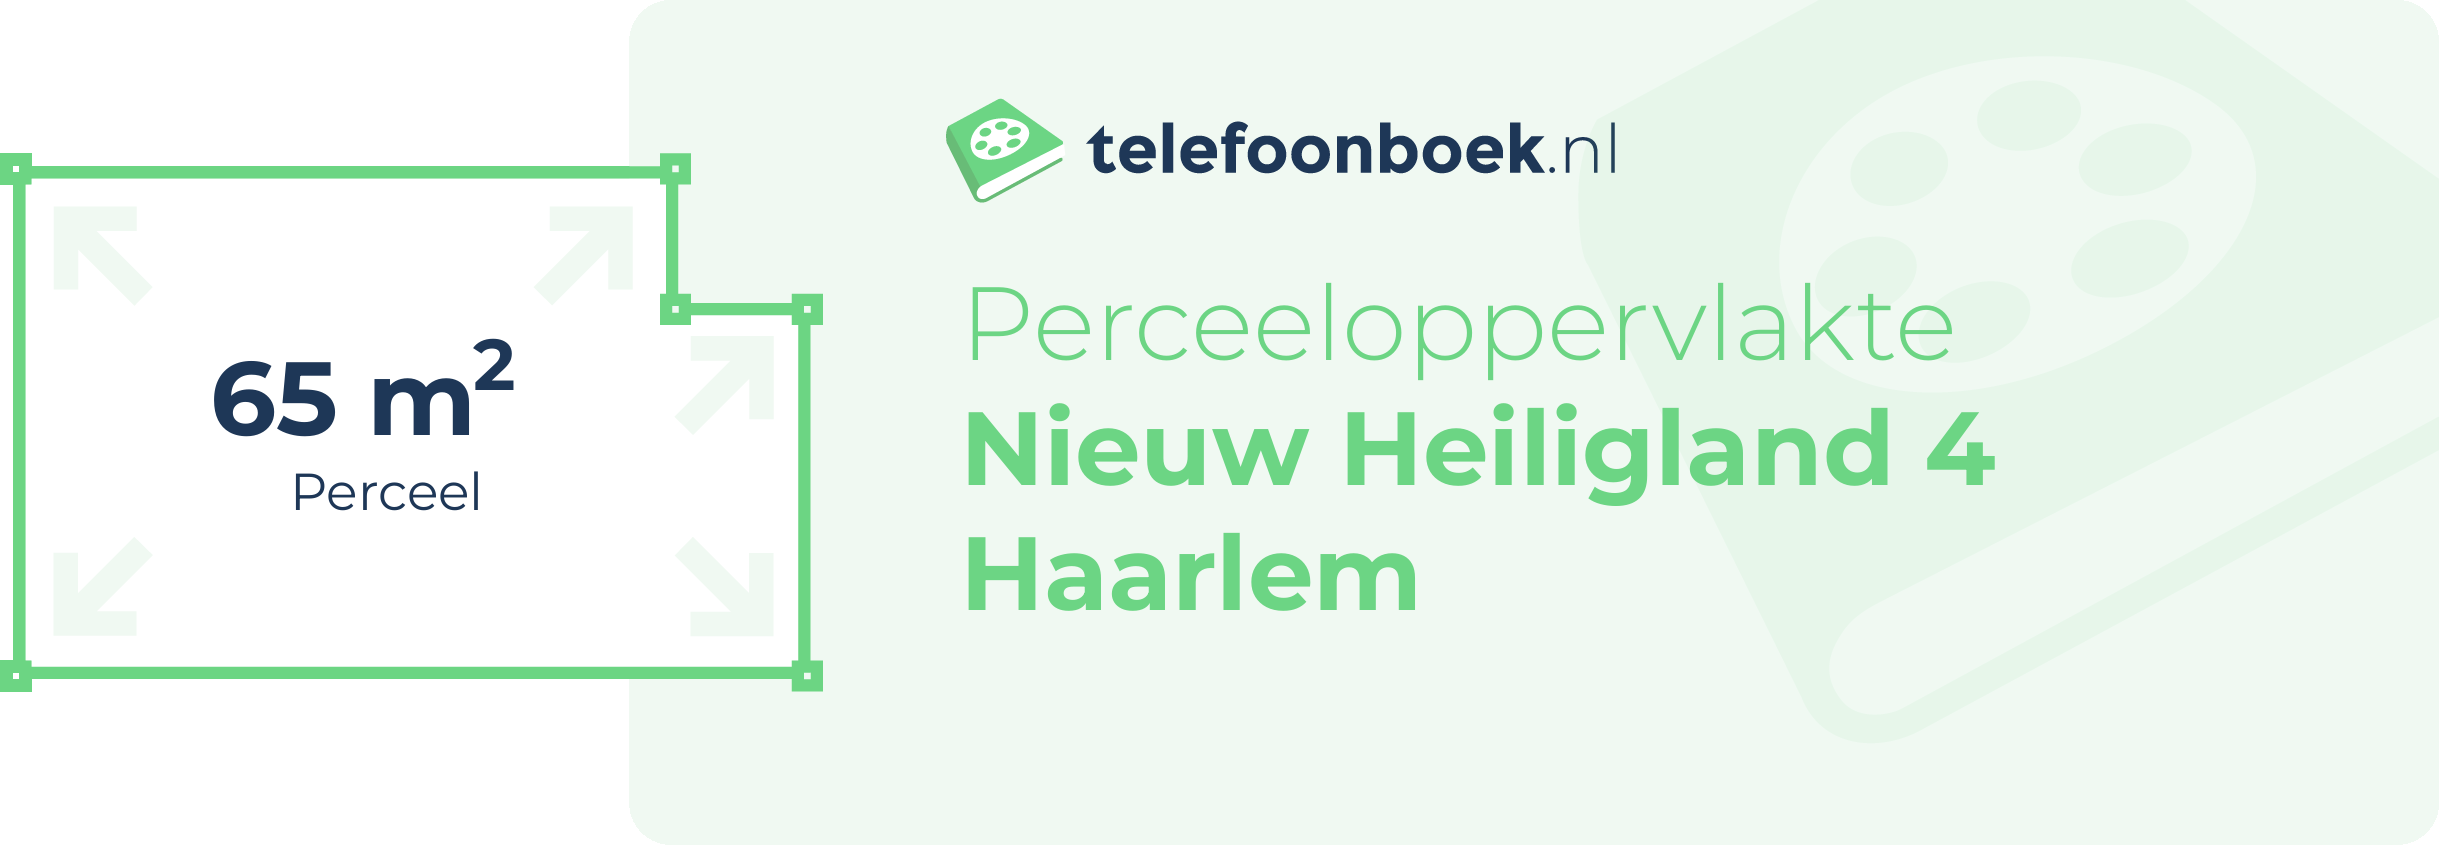 Perceeloppervlakte Nieuw Heiligland 4 Haarlem